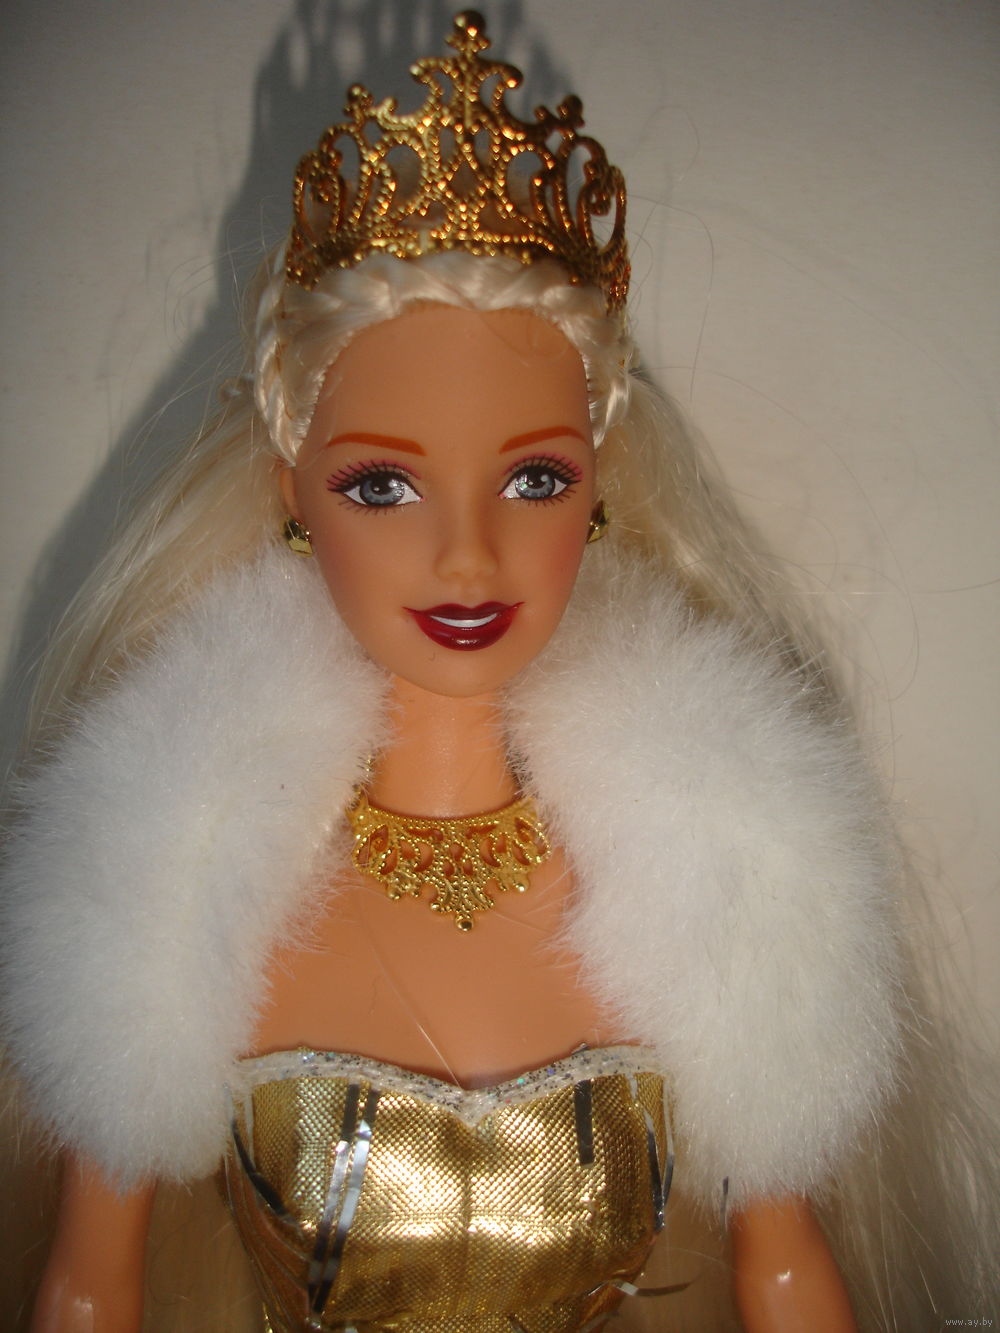 Кукла Принцесса Барби Barbie Celebration Mattel 2000г в золотом платье.